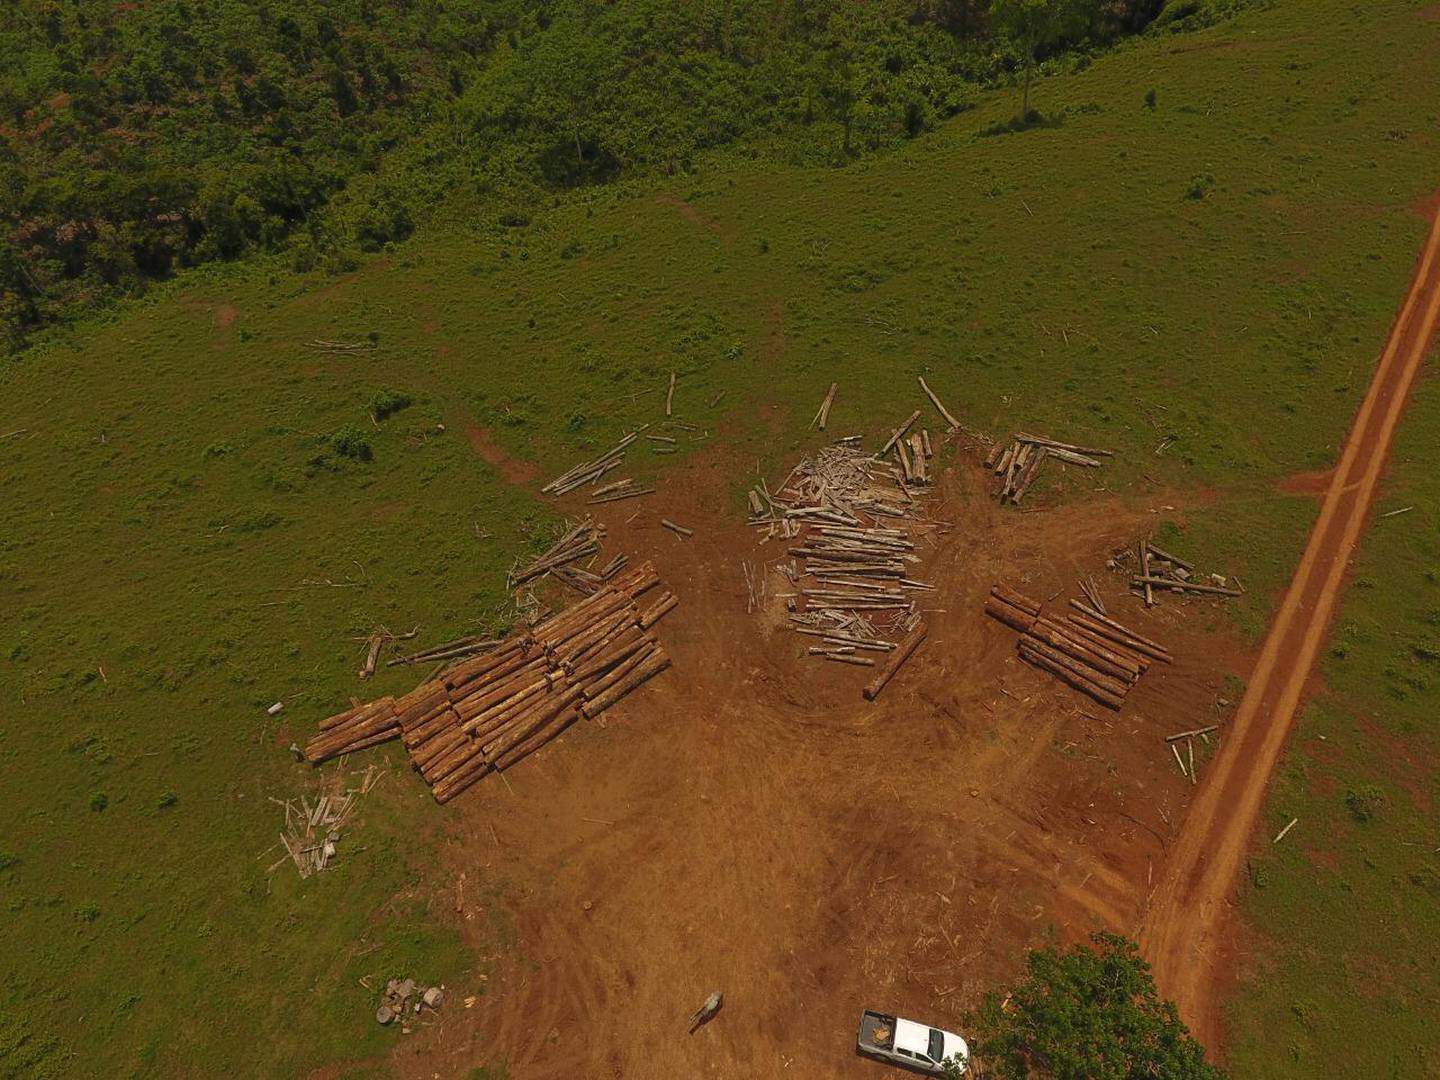 La madera no fue talada en ninguna de las propiedades en las que se encontró, aún se investiga la procedencia. Foto cortesía Sinac